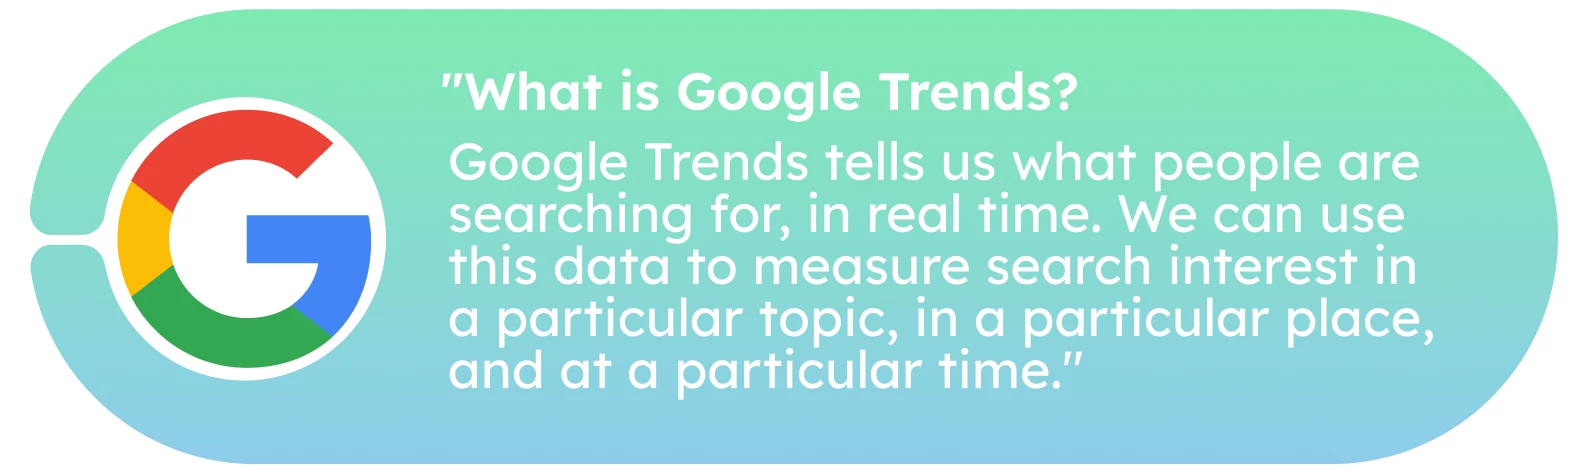 Conas Agus cén fáth Google Trends a úsáid